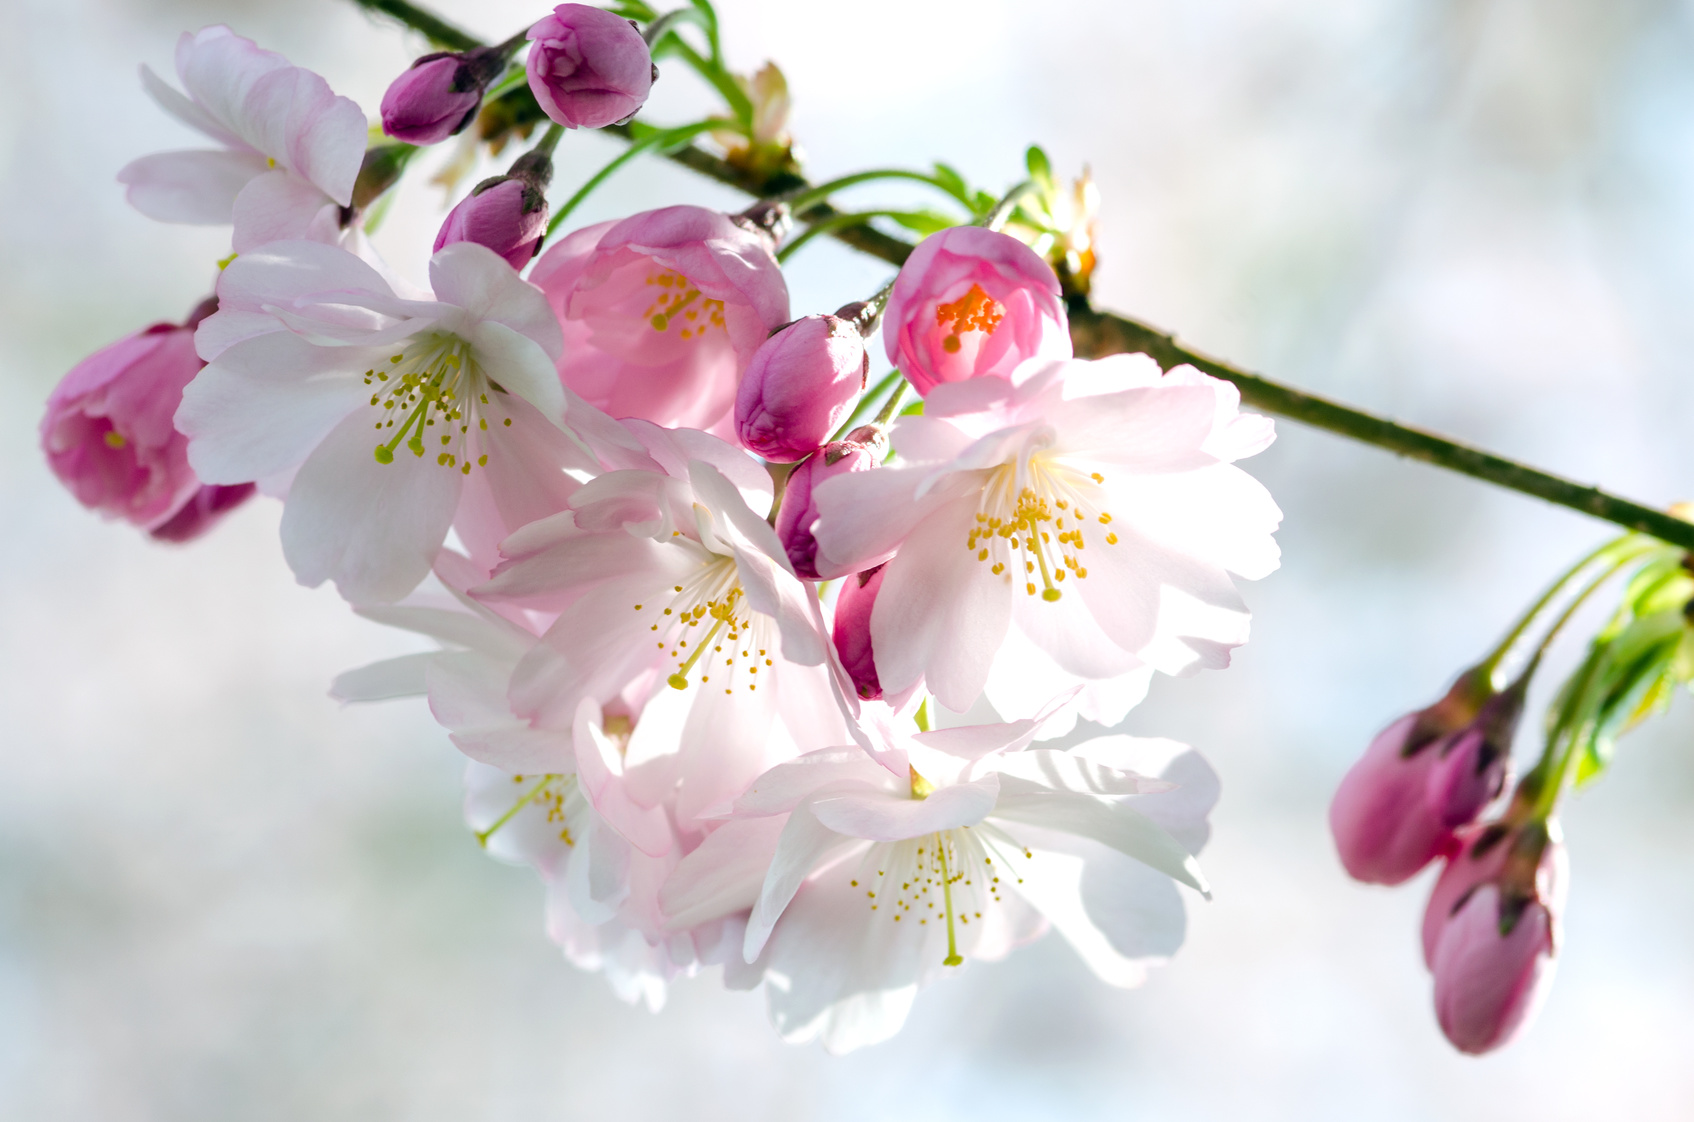 Berlin Marzahn: Asiatische Kultur auf der Kirschblütenwiese erleben